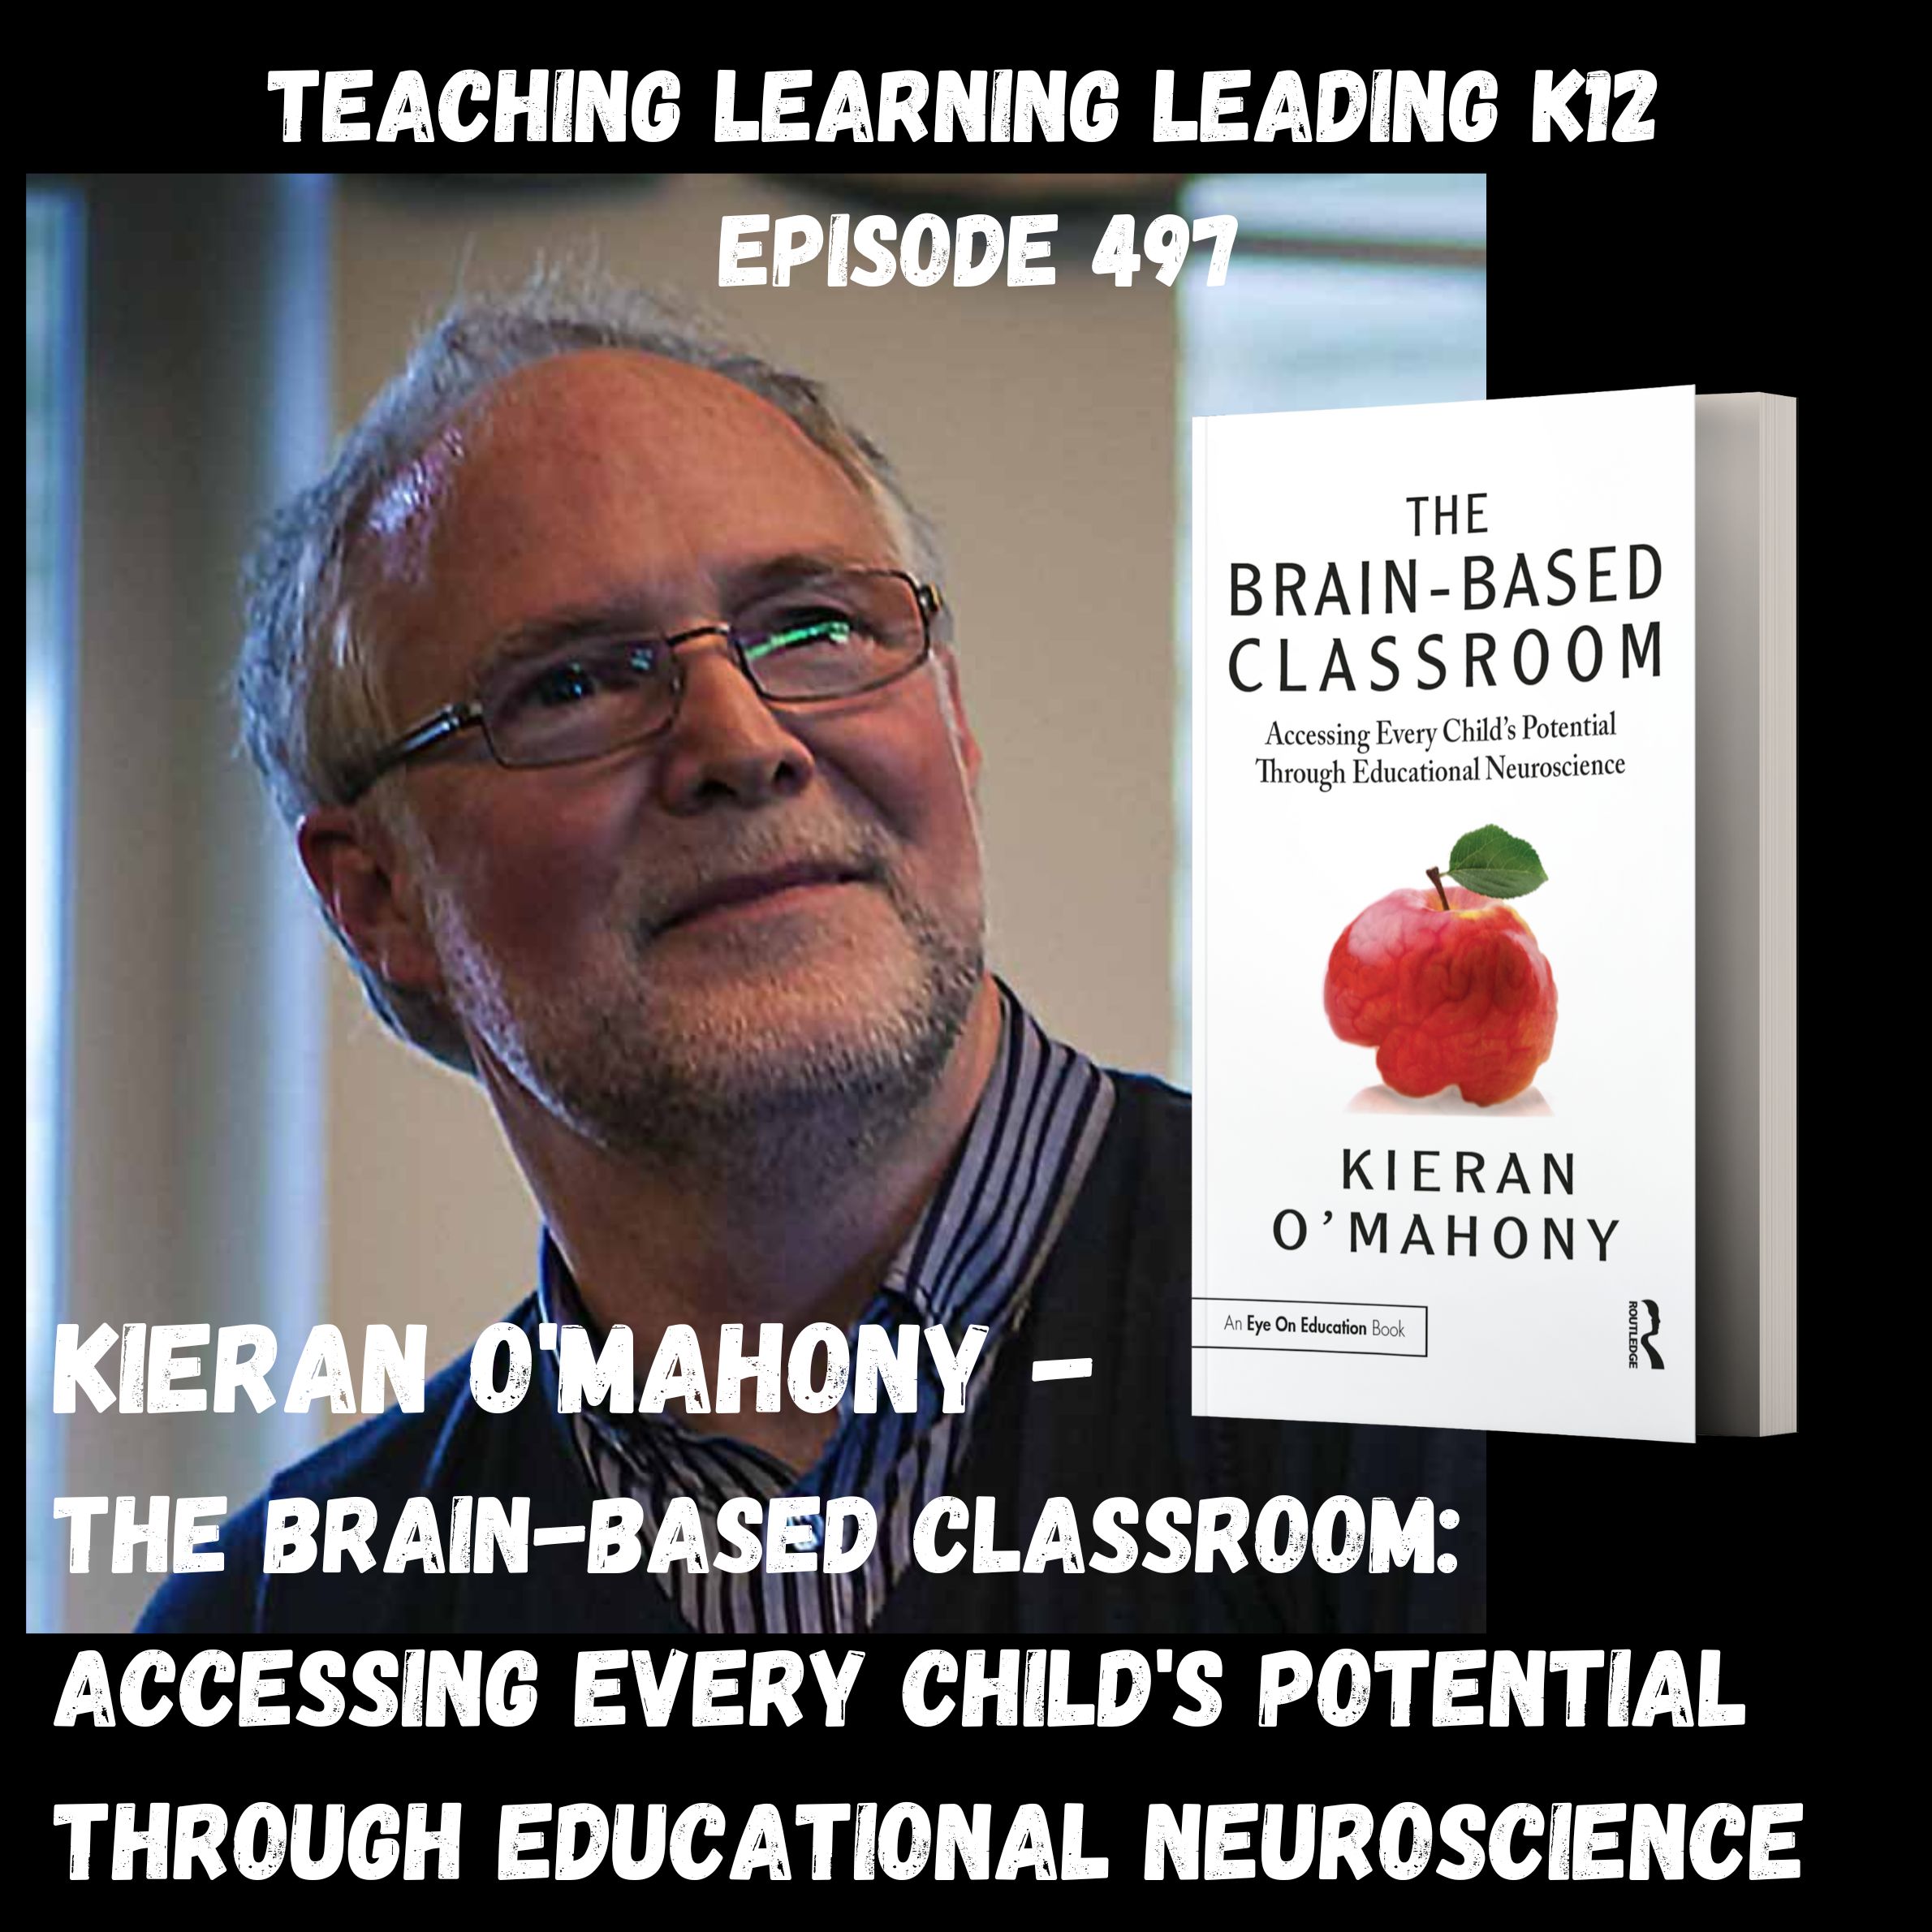 Kieran O’Mahony - The Brain-Based Classroom: Accessing Every Child’s Potential Through Educational Neuroscience - 497